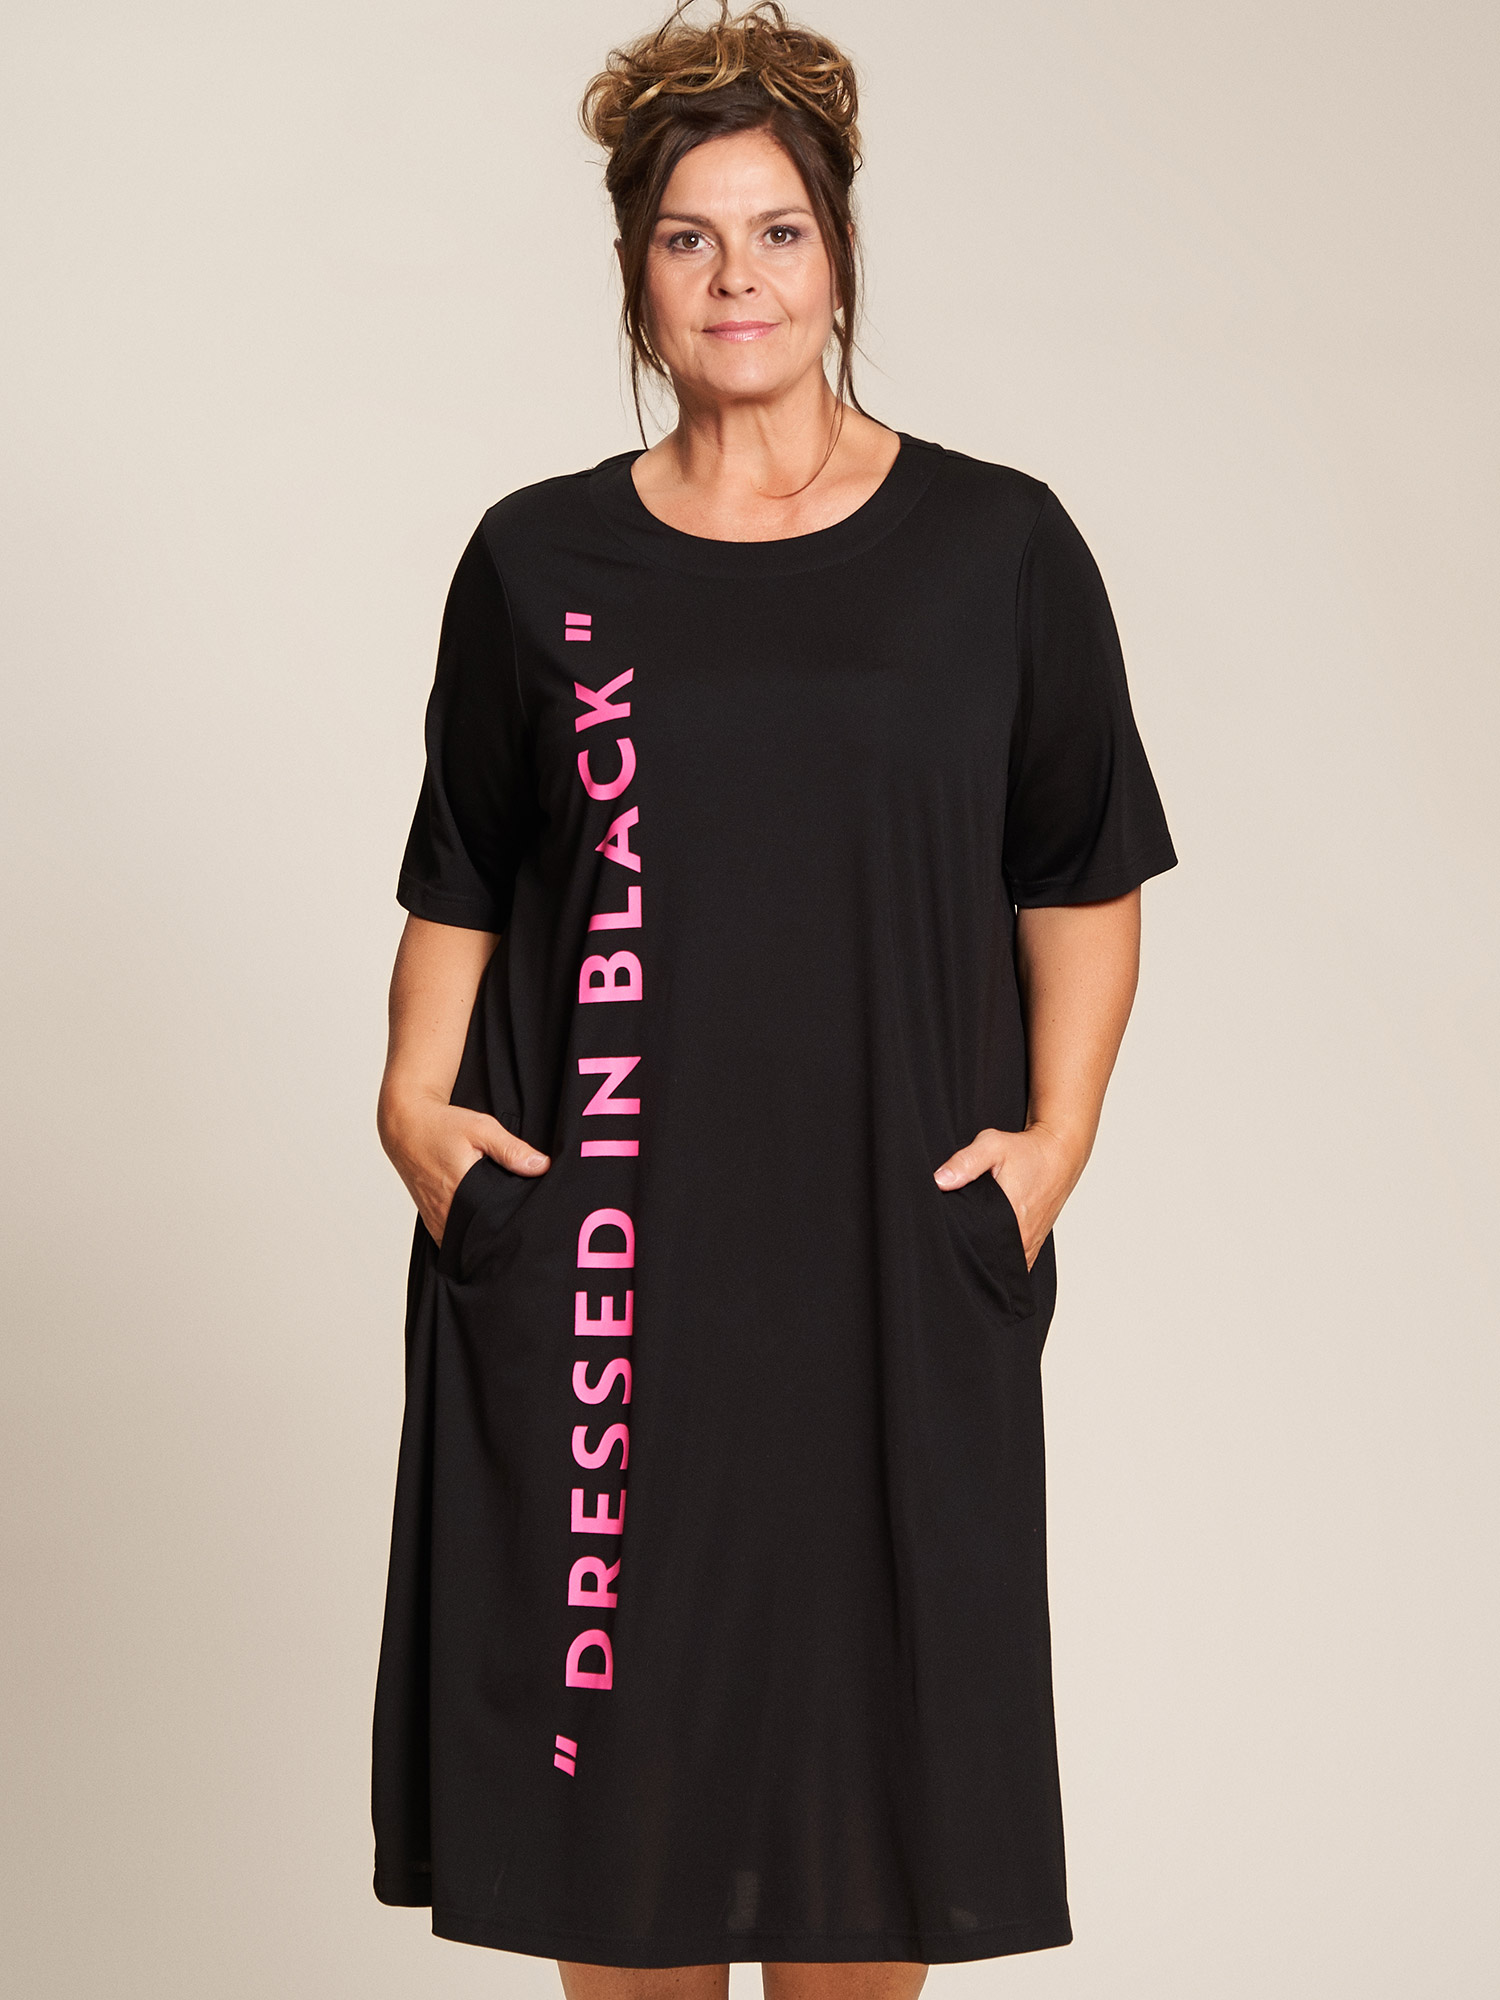 Billede af Gozzip Black Gry - Sort jersey kjole med Pink print og gode lommer, 42-44 / S